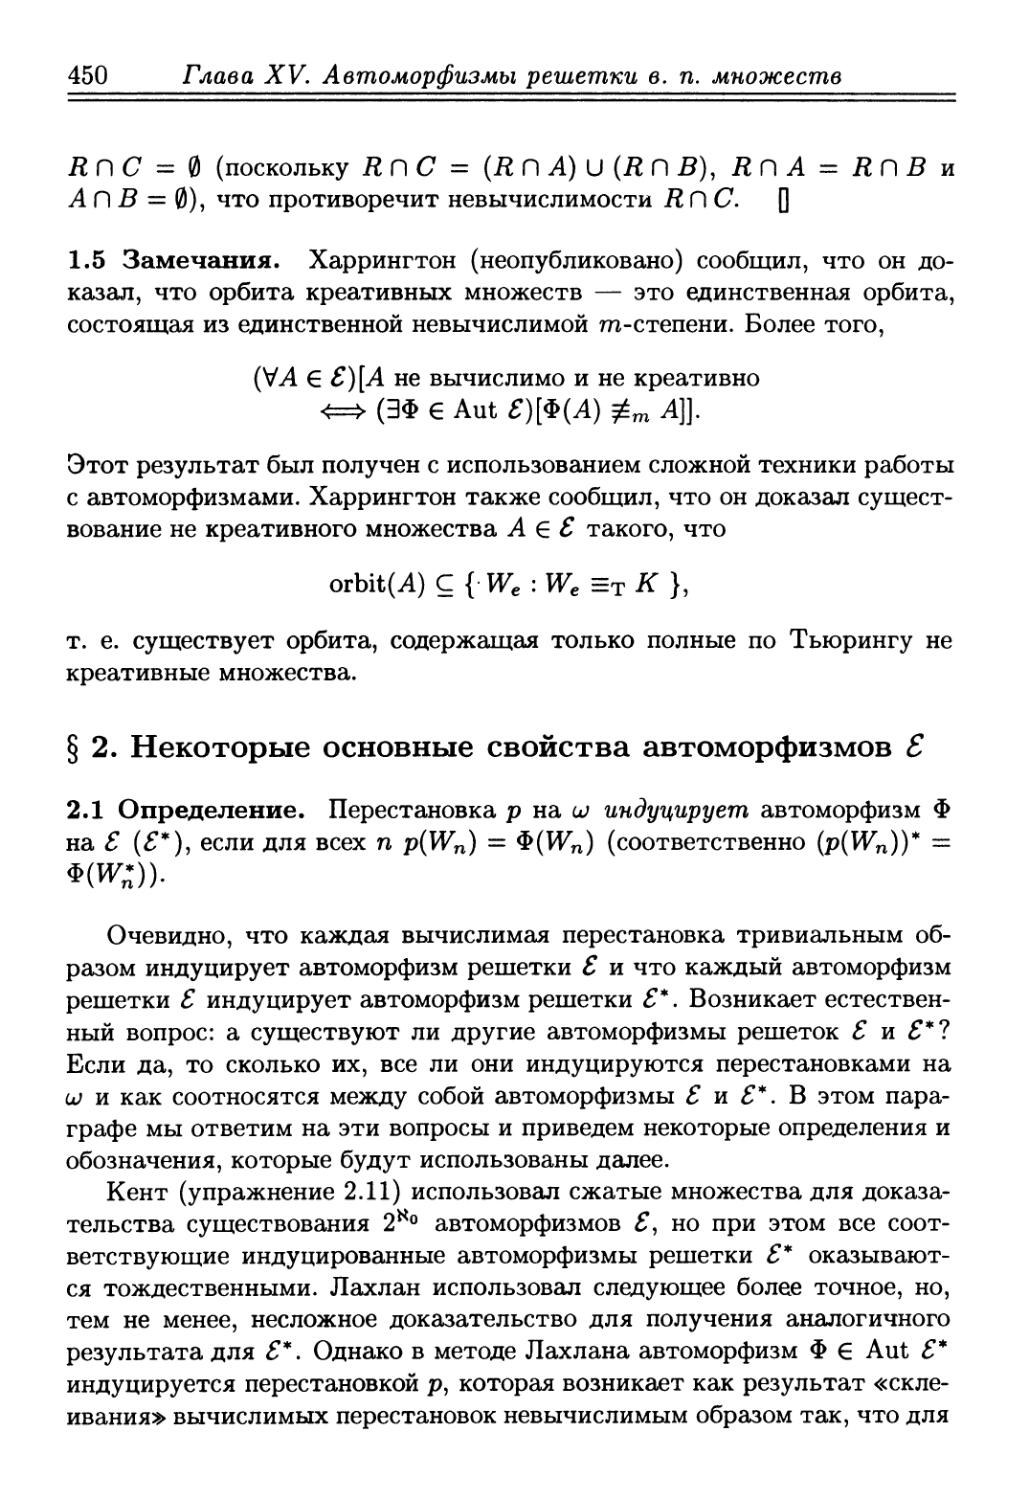 § 2. Некоторые основные свойства автоморфизмов решетки в. п. множеств